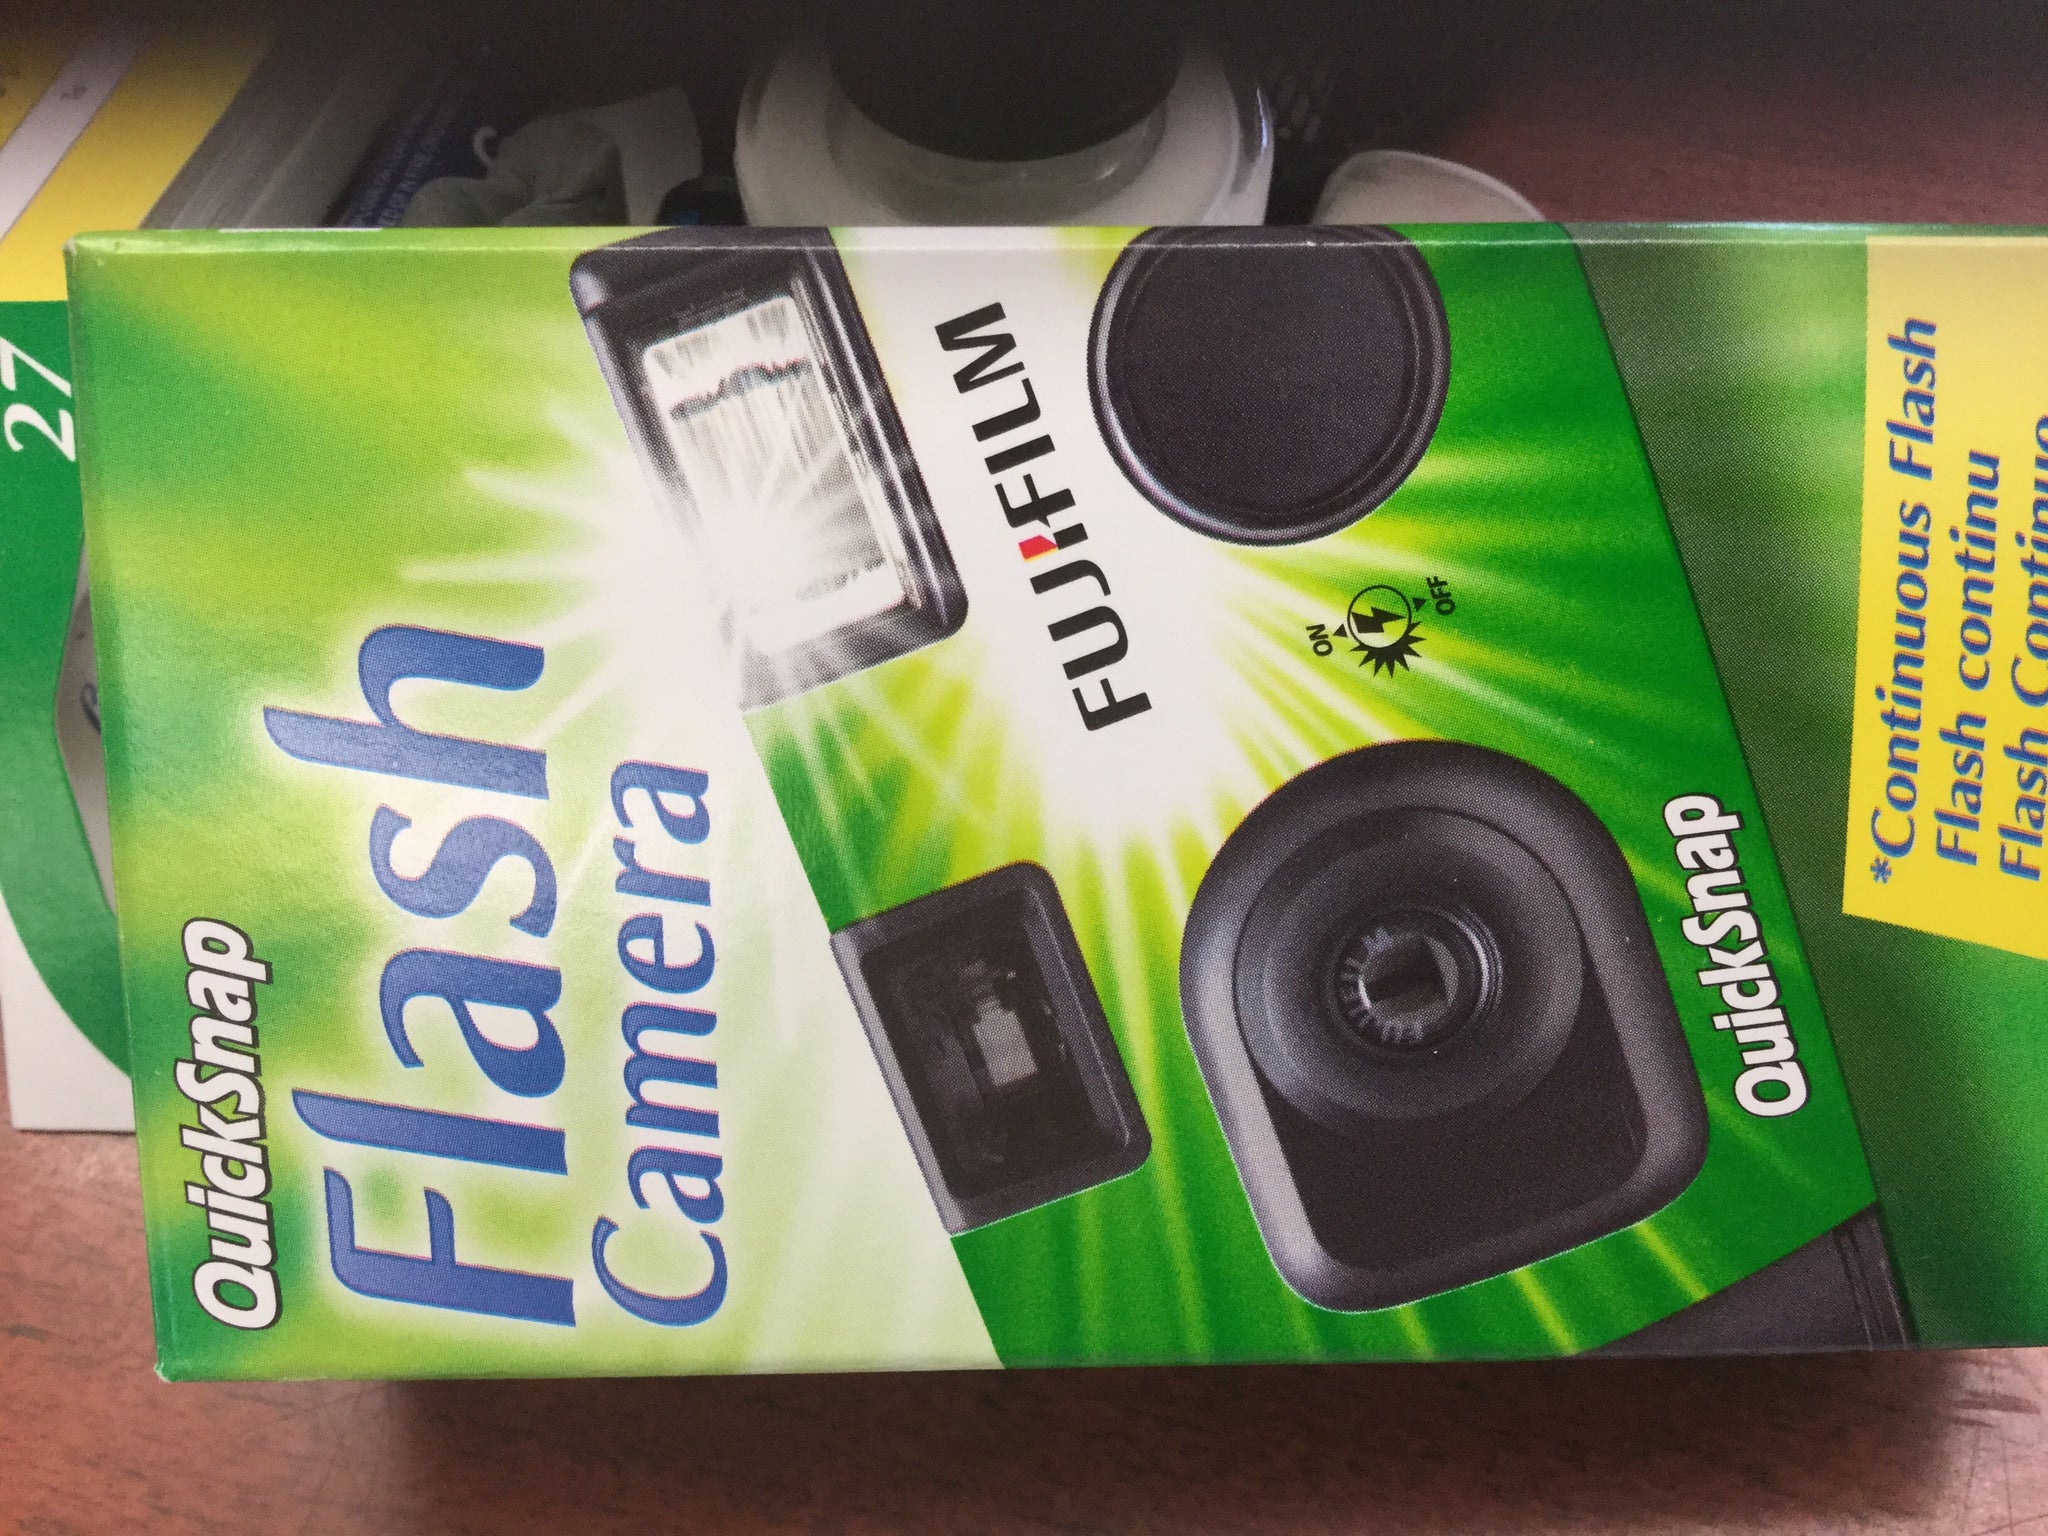 FujiFilm Flash camera 400 35mm